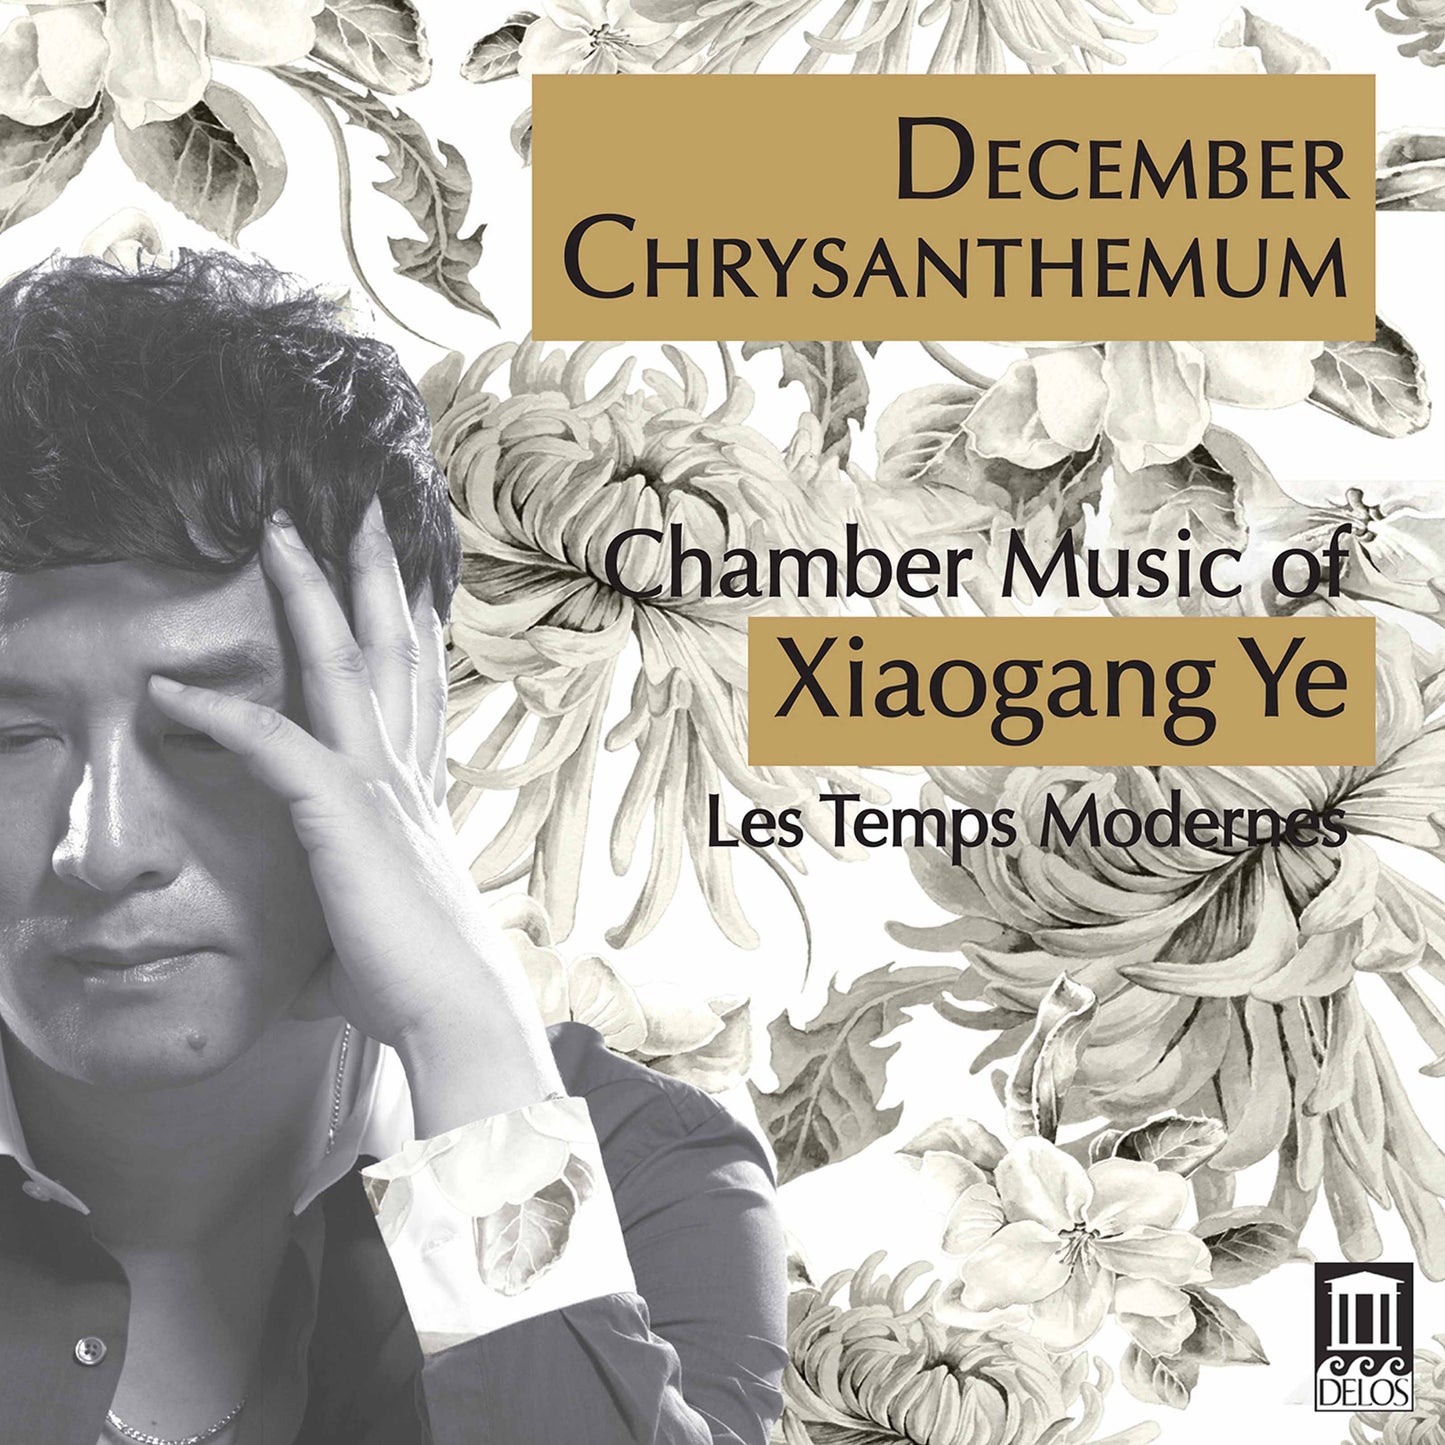 December Chrysanthemum - Chamber Music of Xiaogang Ye